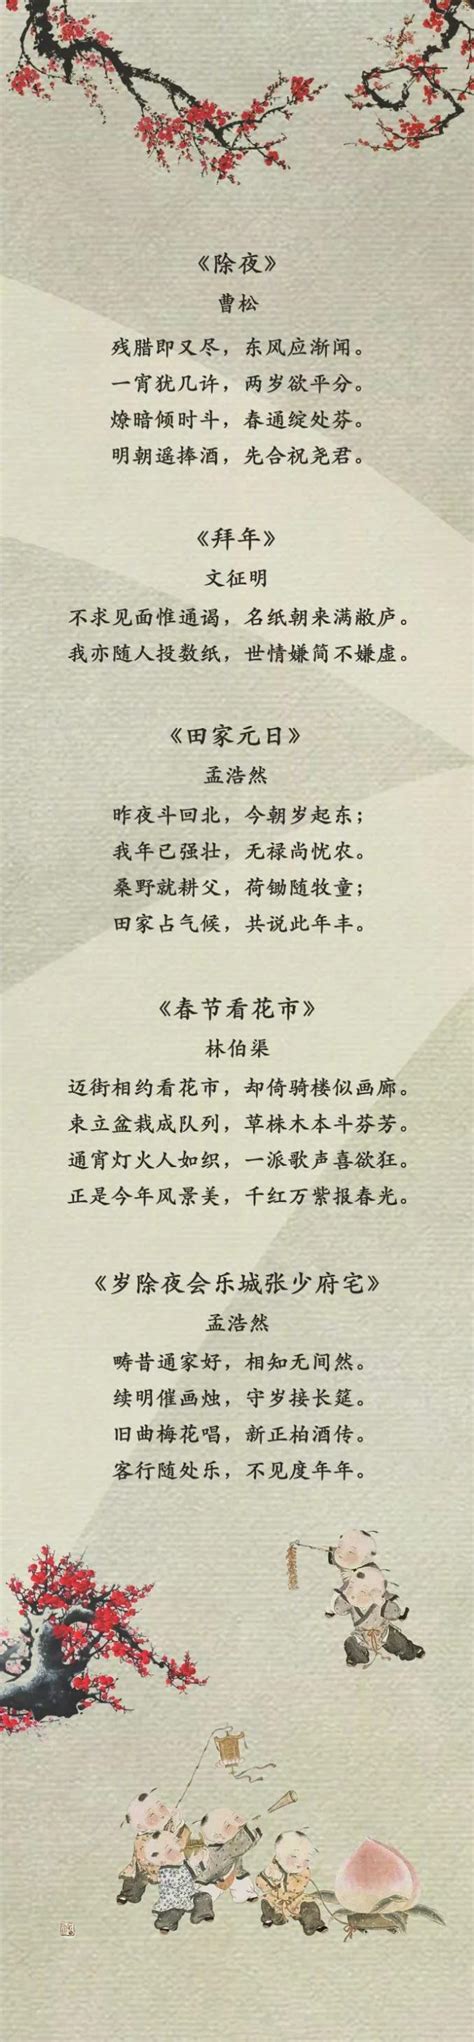 春节的诗词